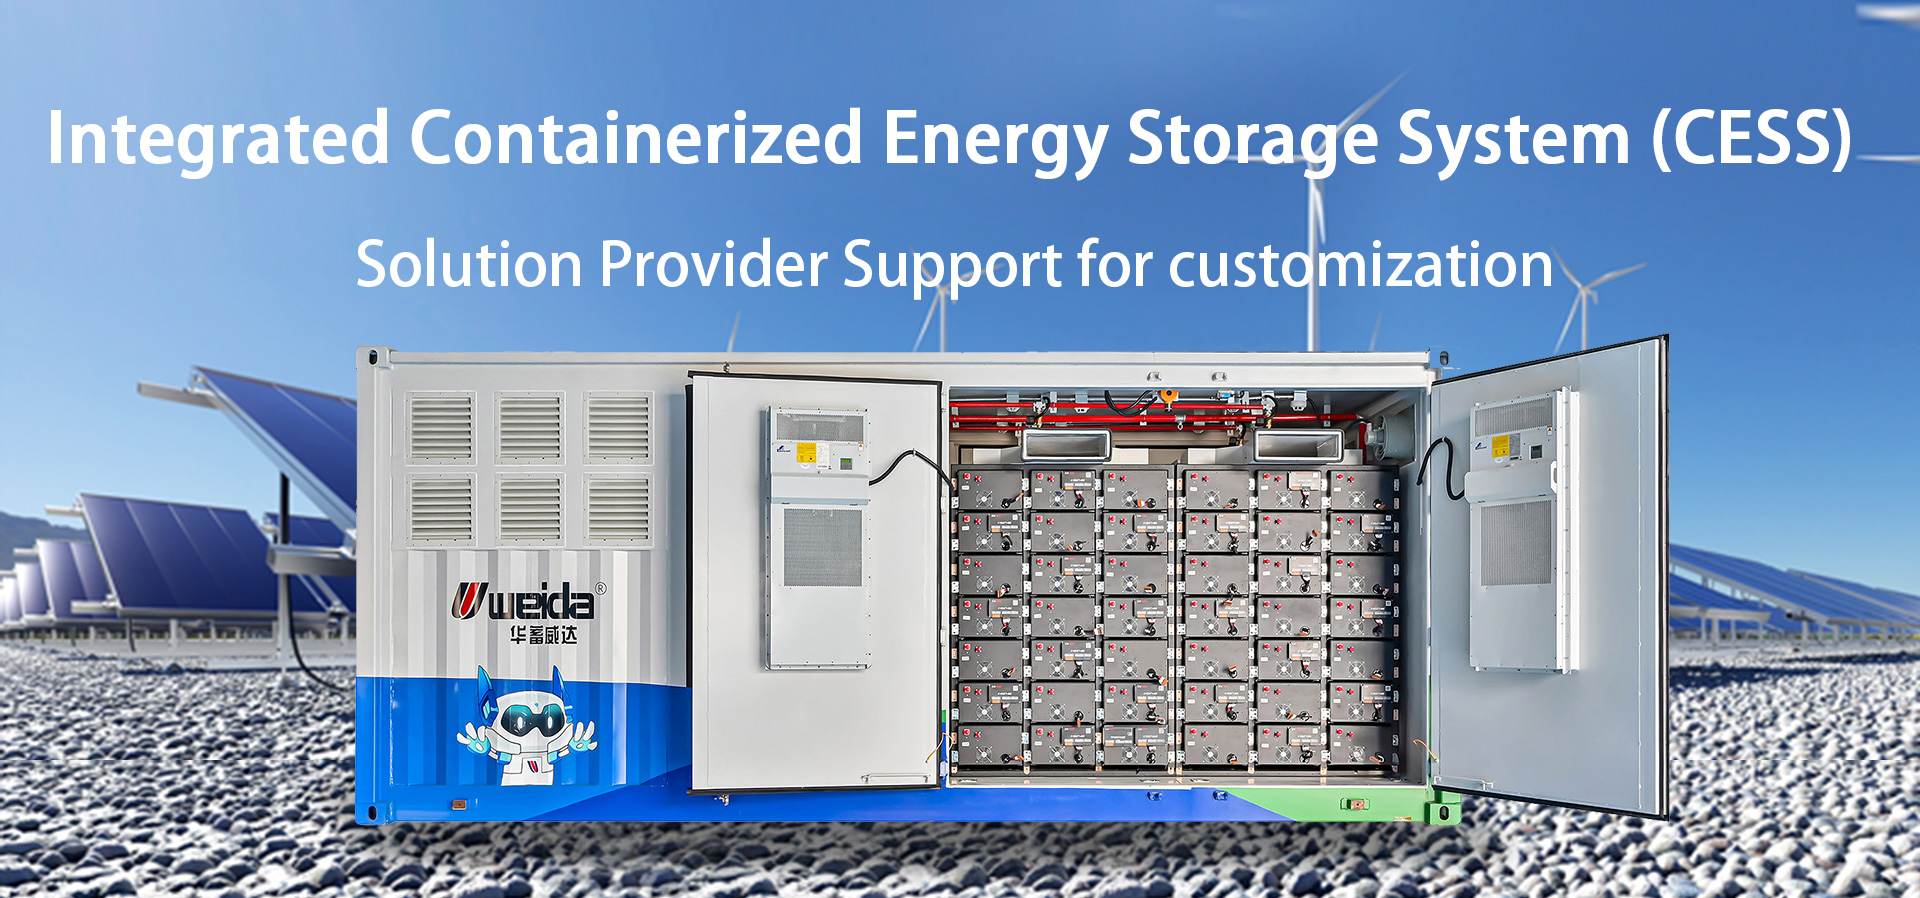 Sistema integrado de almacenamiento de energía en contenedores CESS